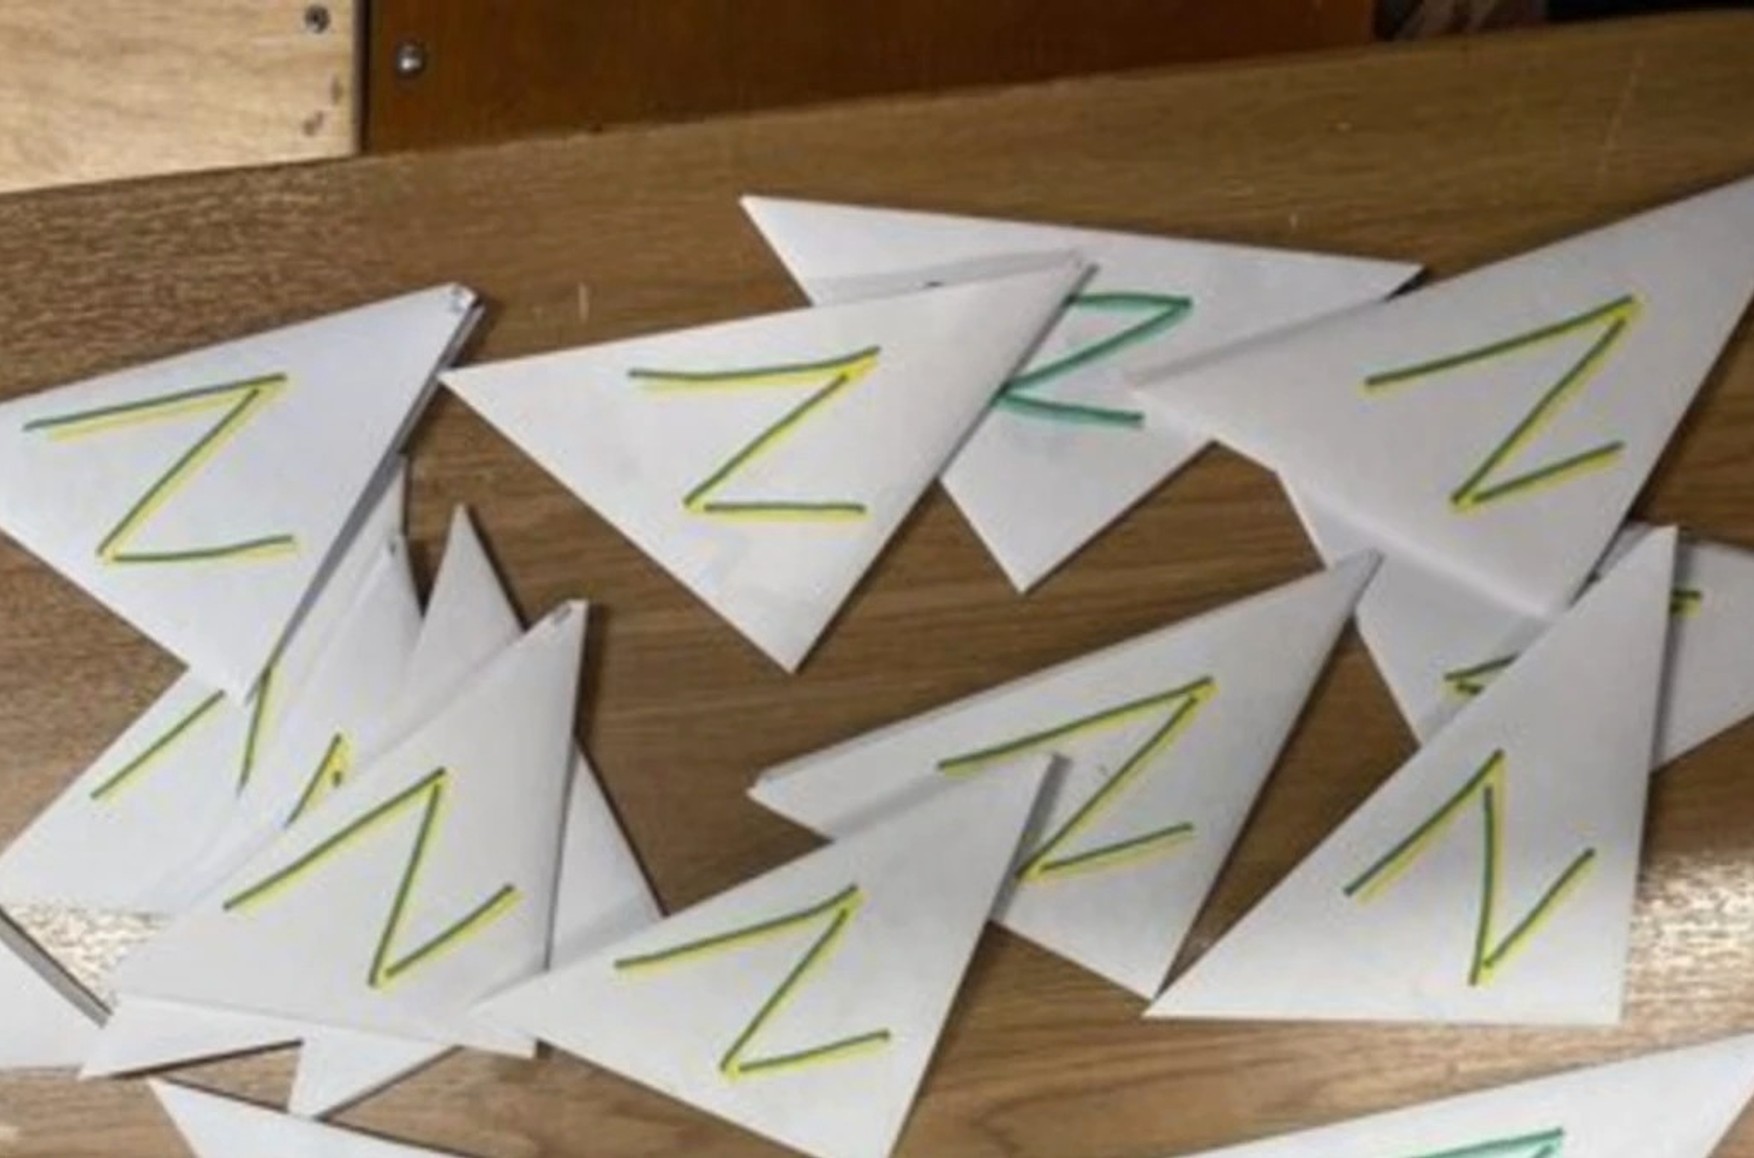 Российская учительница написала 30 писем с Z-символикой вместо своих учеников, чтобы оградить их от пропаганды